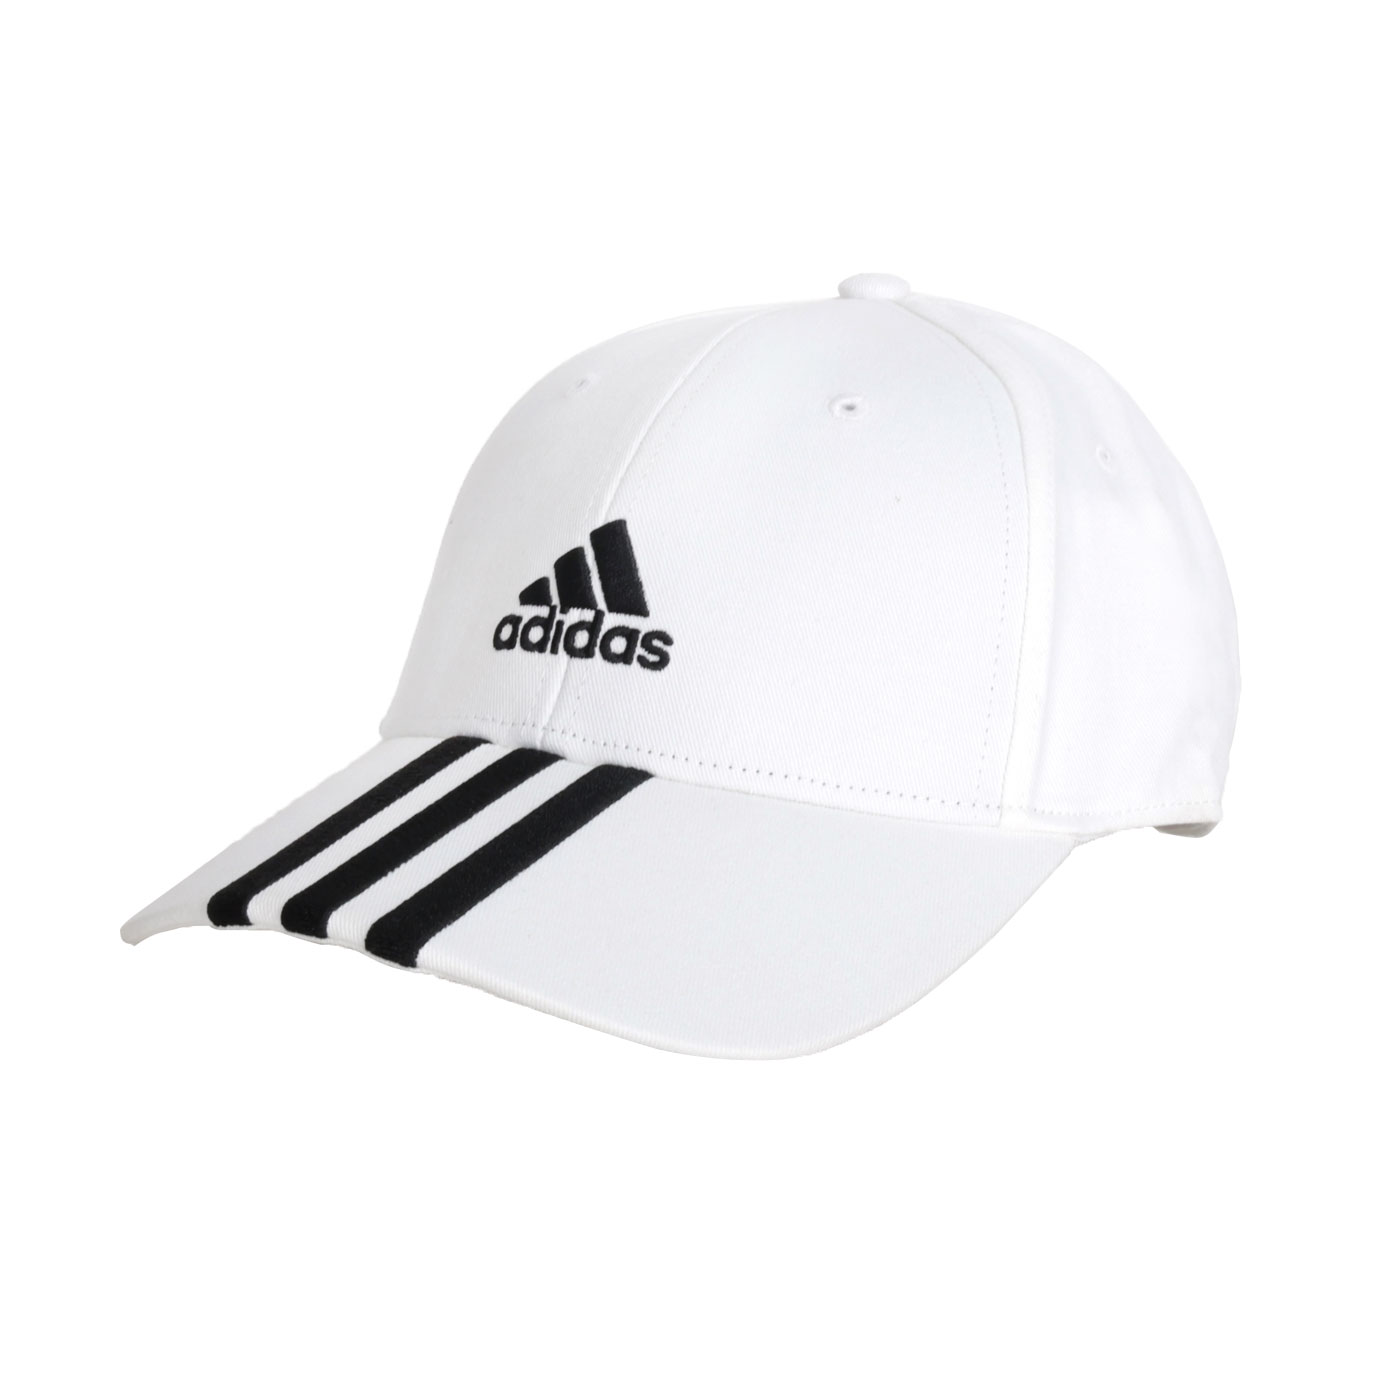 ADIDAS 運動帽  II3509 - 白黑